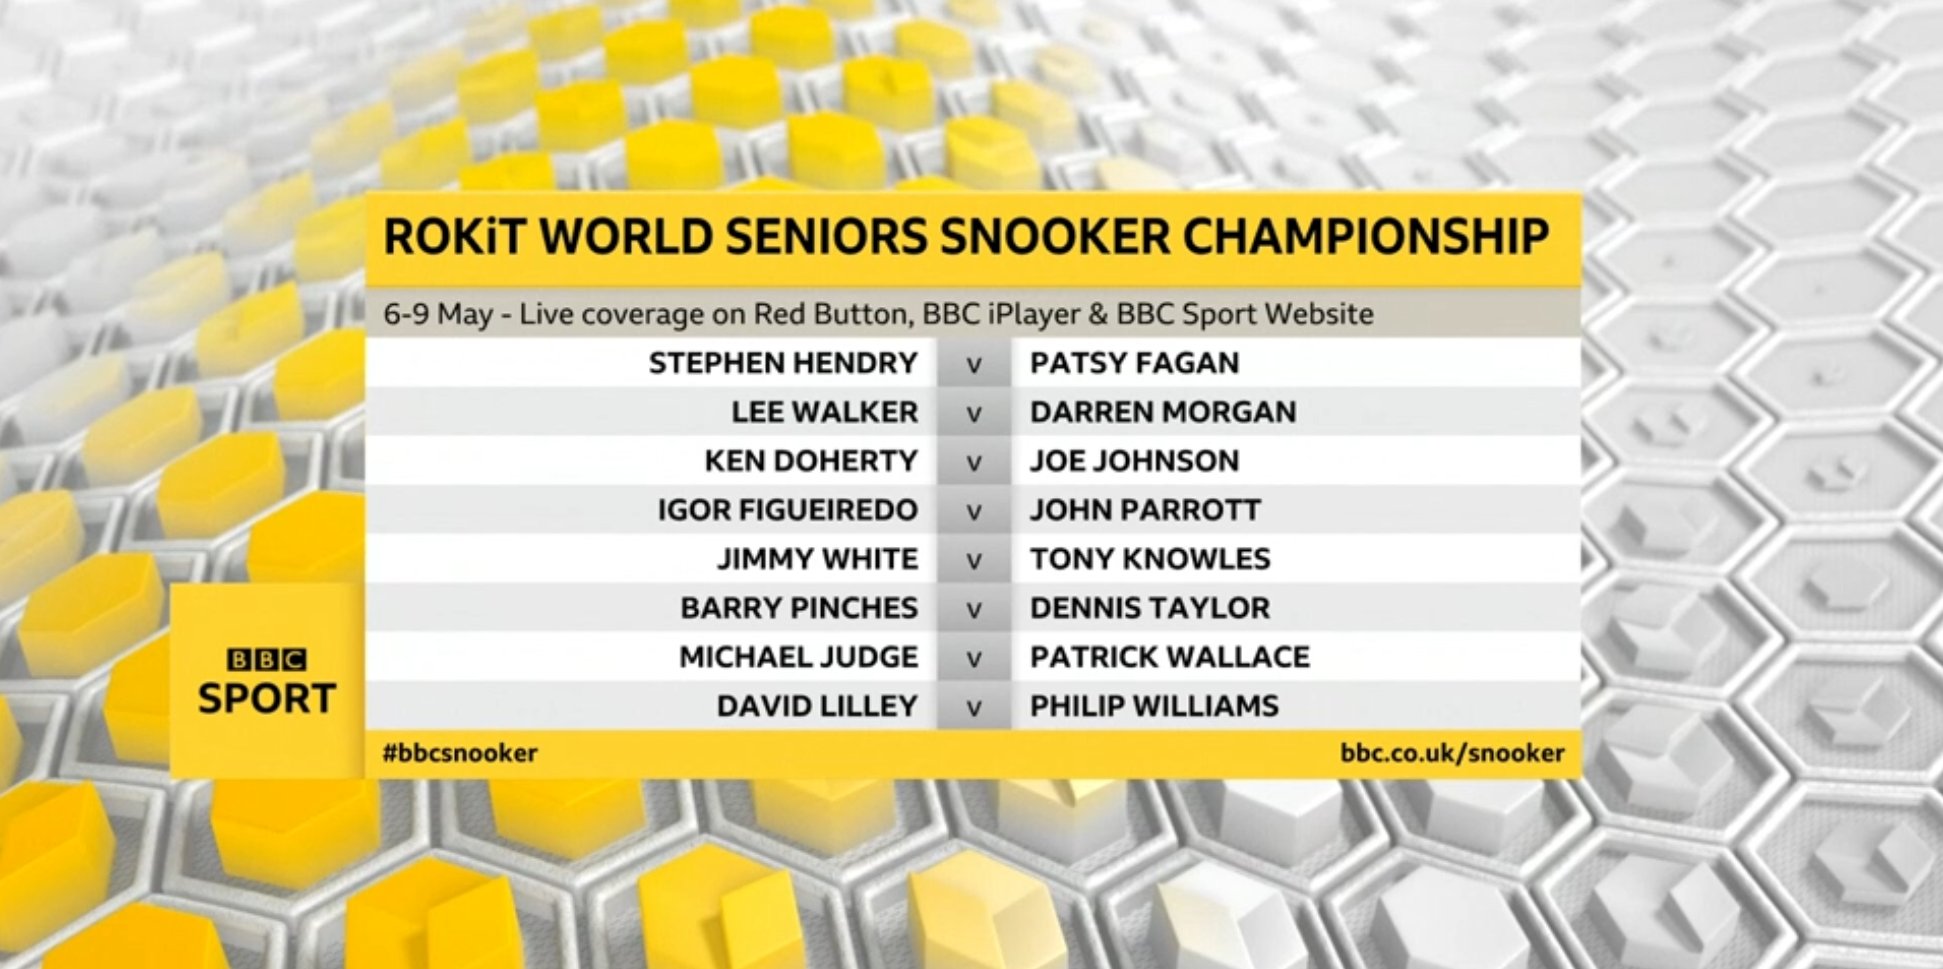 World Seniors Snooker Tour on Twitter